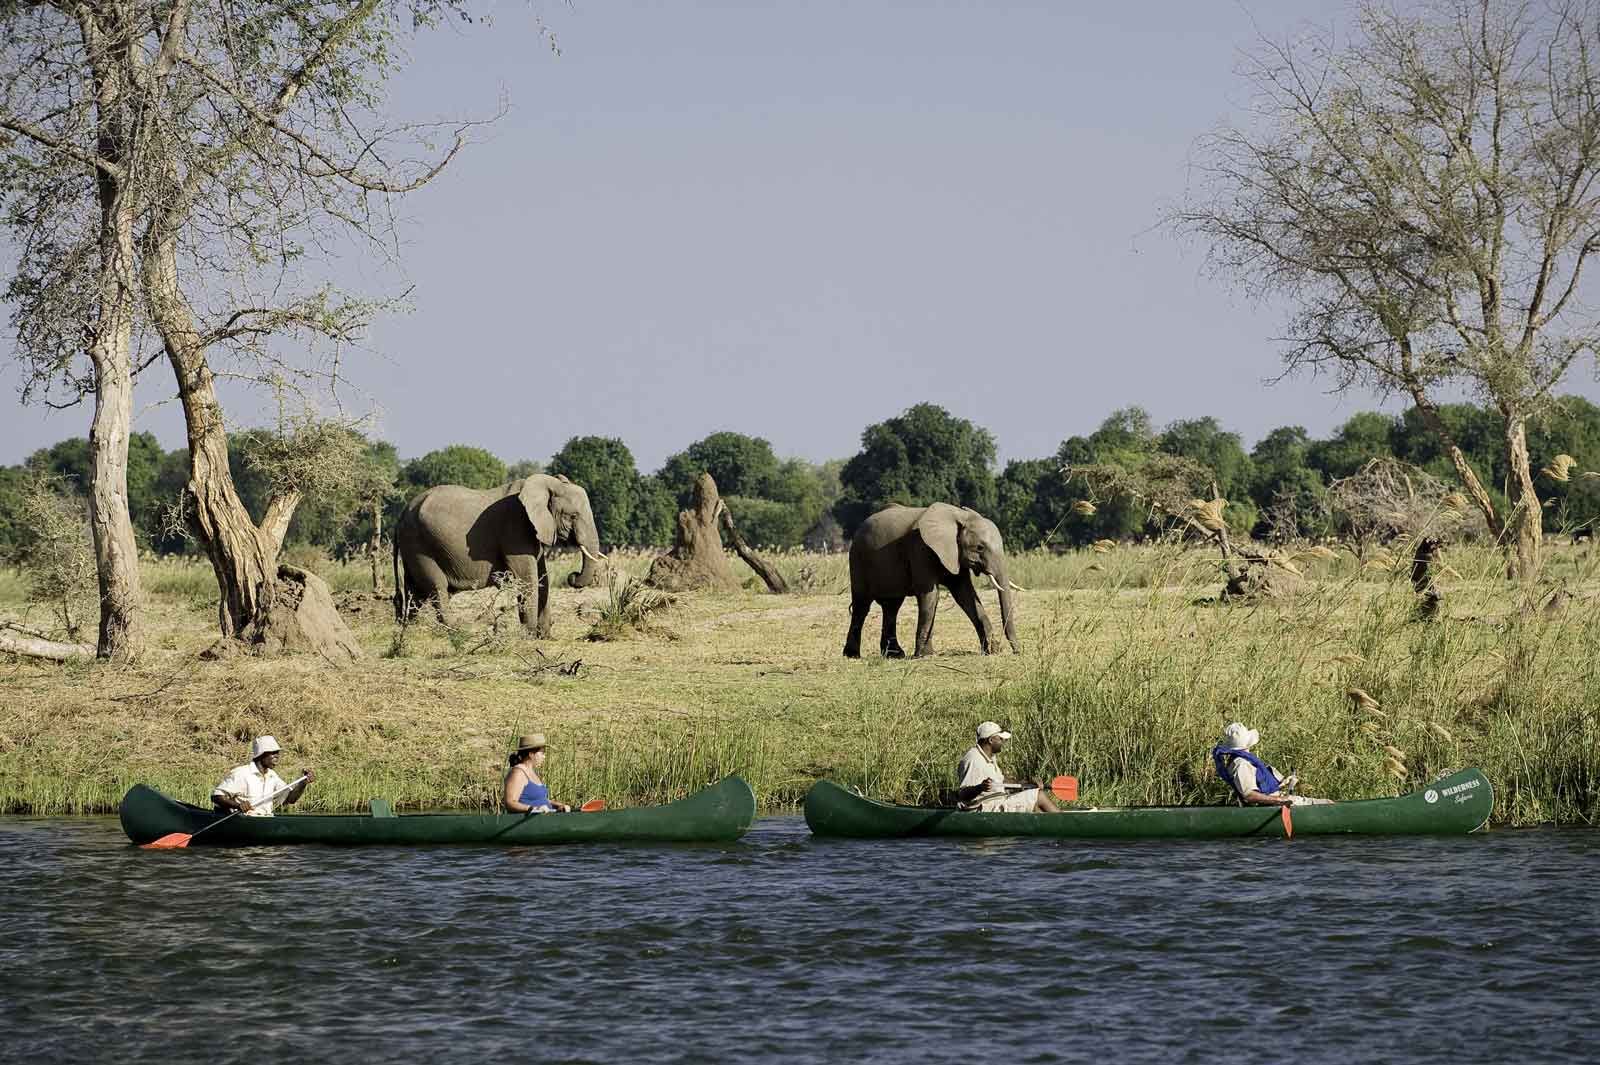 Day 03: Canoeing Safari; Game Viewing